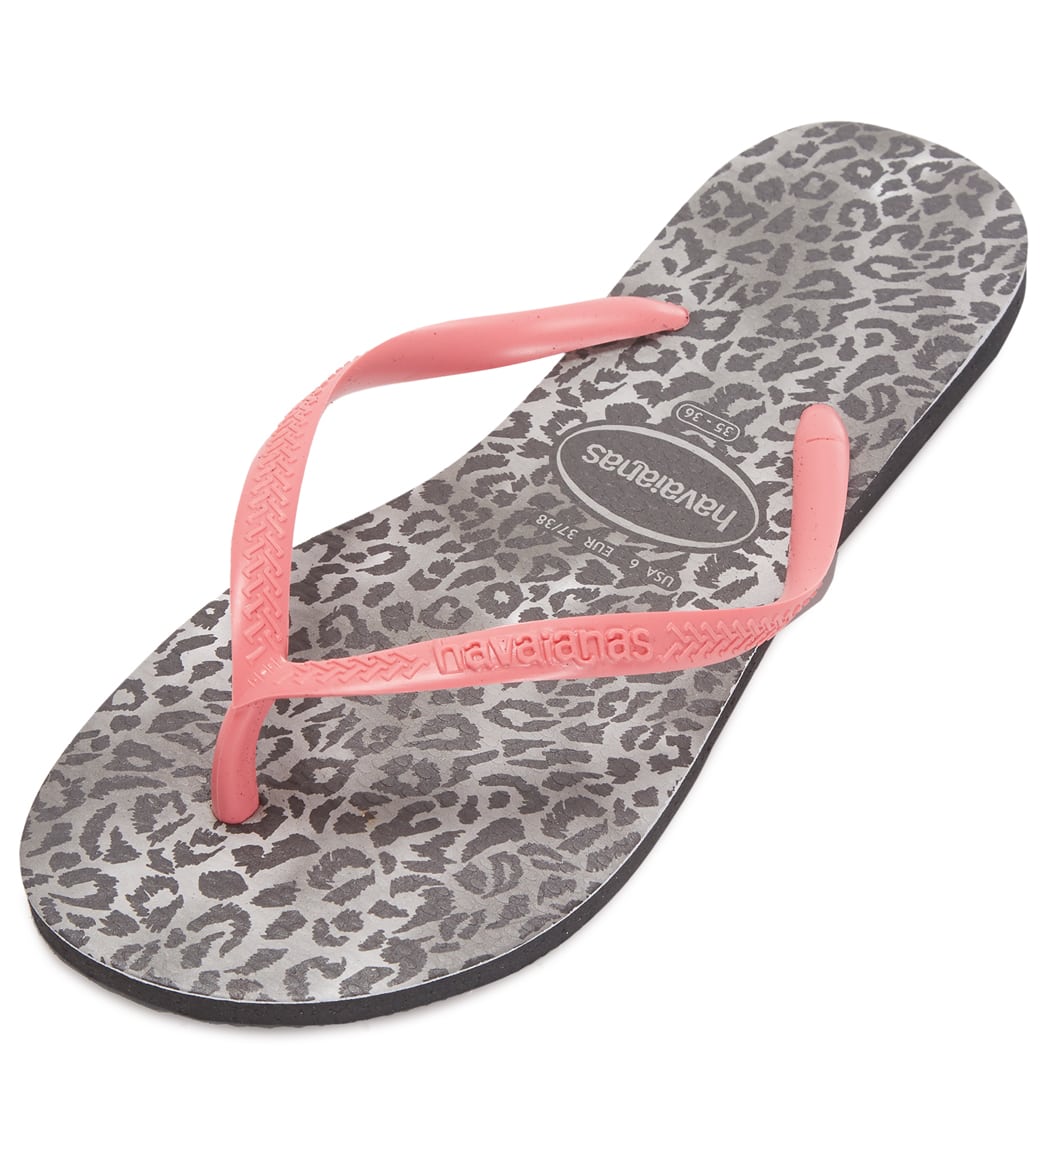 Havaianas Slim Leopard Sandals - Black 37/38 - Swimoutlet.com